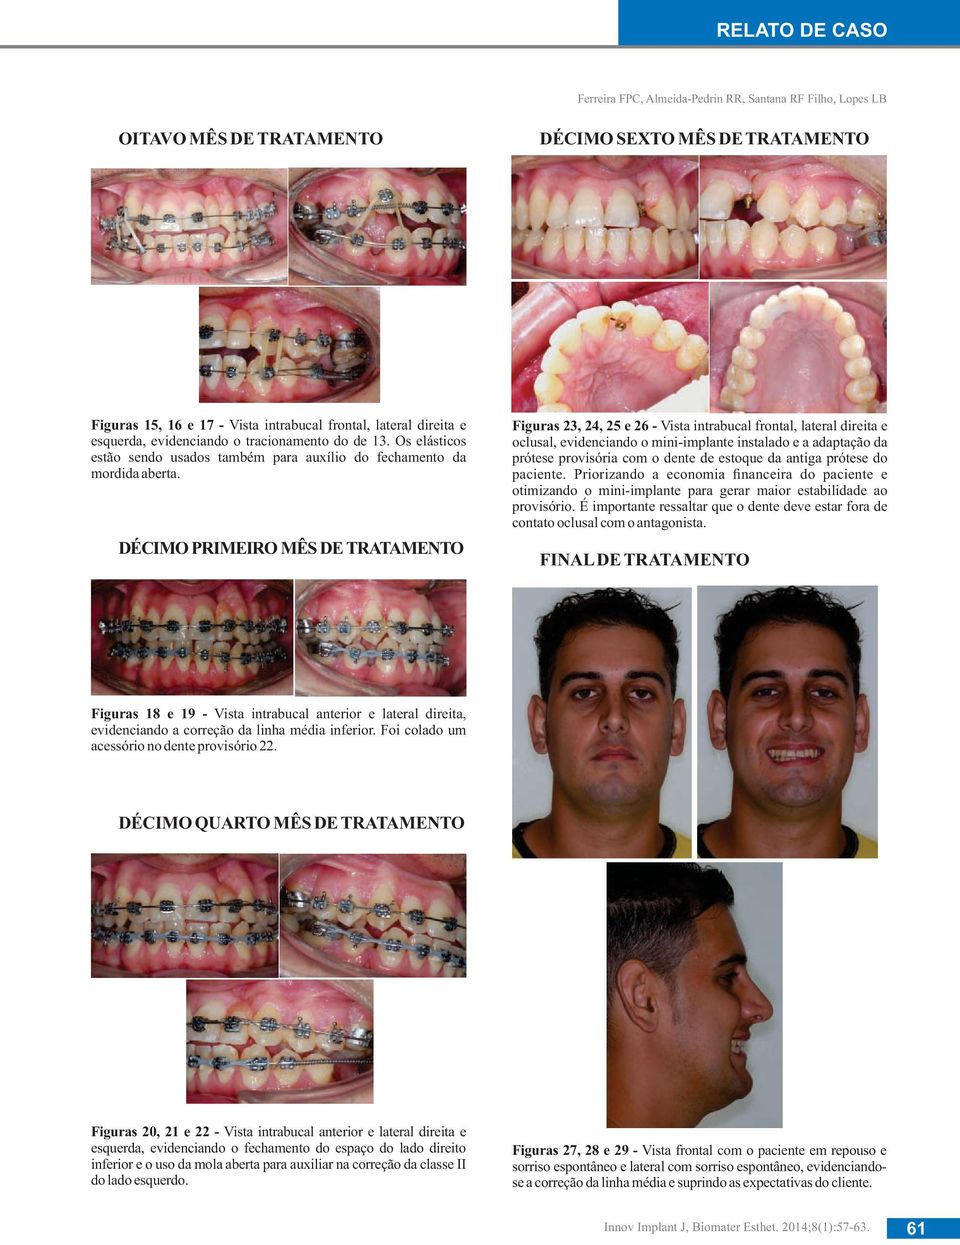 DÉCIMO PRIMEIRO MÊS DE TRATAMENTO Figuras 23, 24, 25 e 26 - Vista intrabucal frontal, lateral direita e oclusal, evidenciando o mini-implante instalado e a adaptação da prótese provisória com o dente